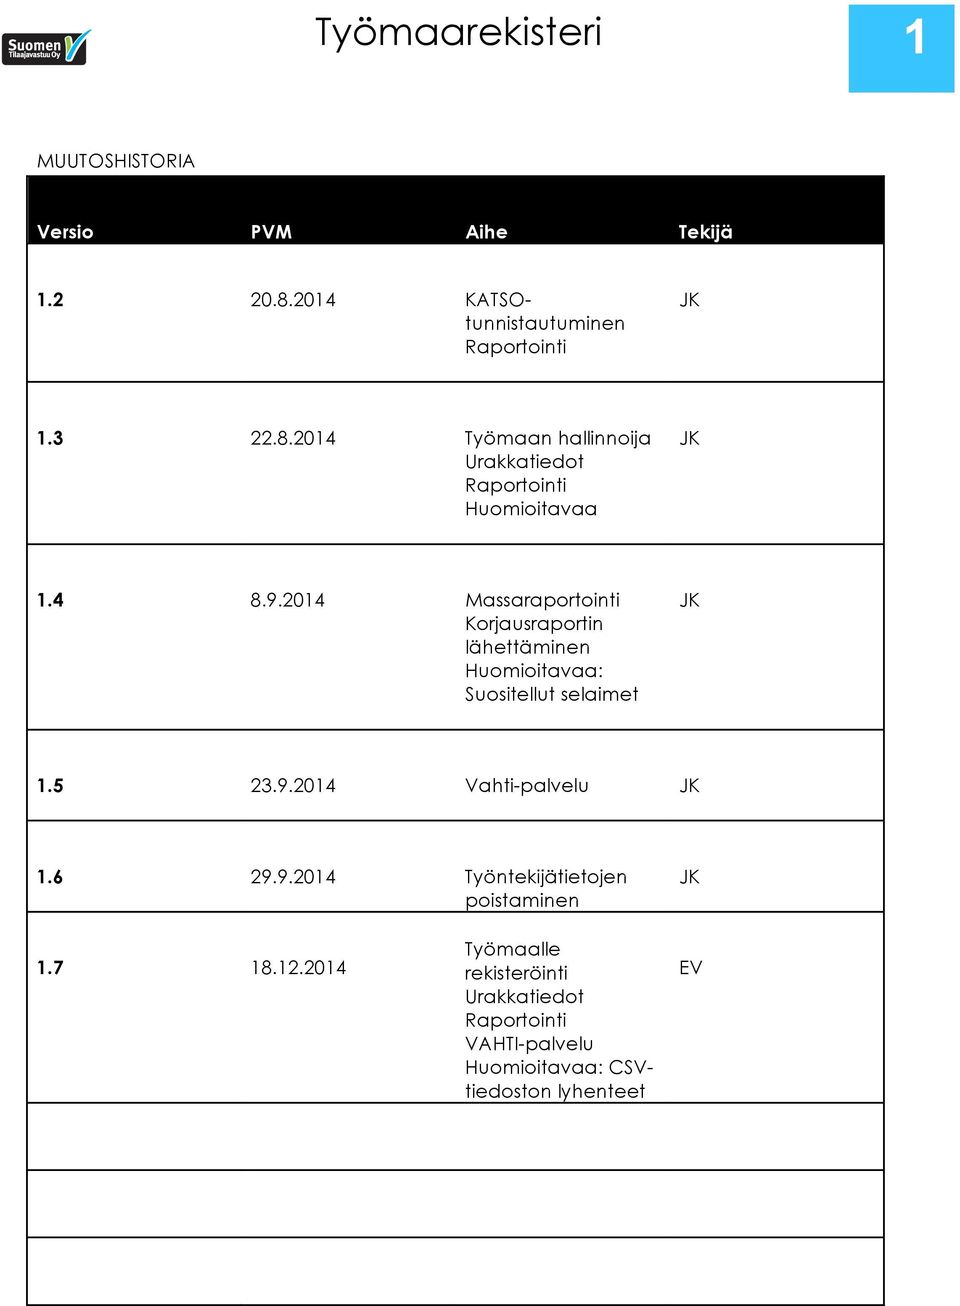 4 8.9.2014 Massaraportointi Korjausraportin lähettäminen Huomioitavaa: Suositellut selaimet JK 1.5 23.9.2014 Vahti-palvelu JK 1.